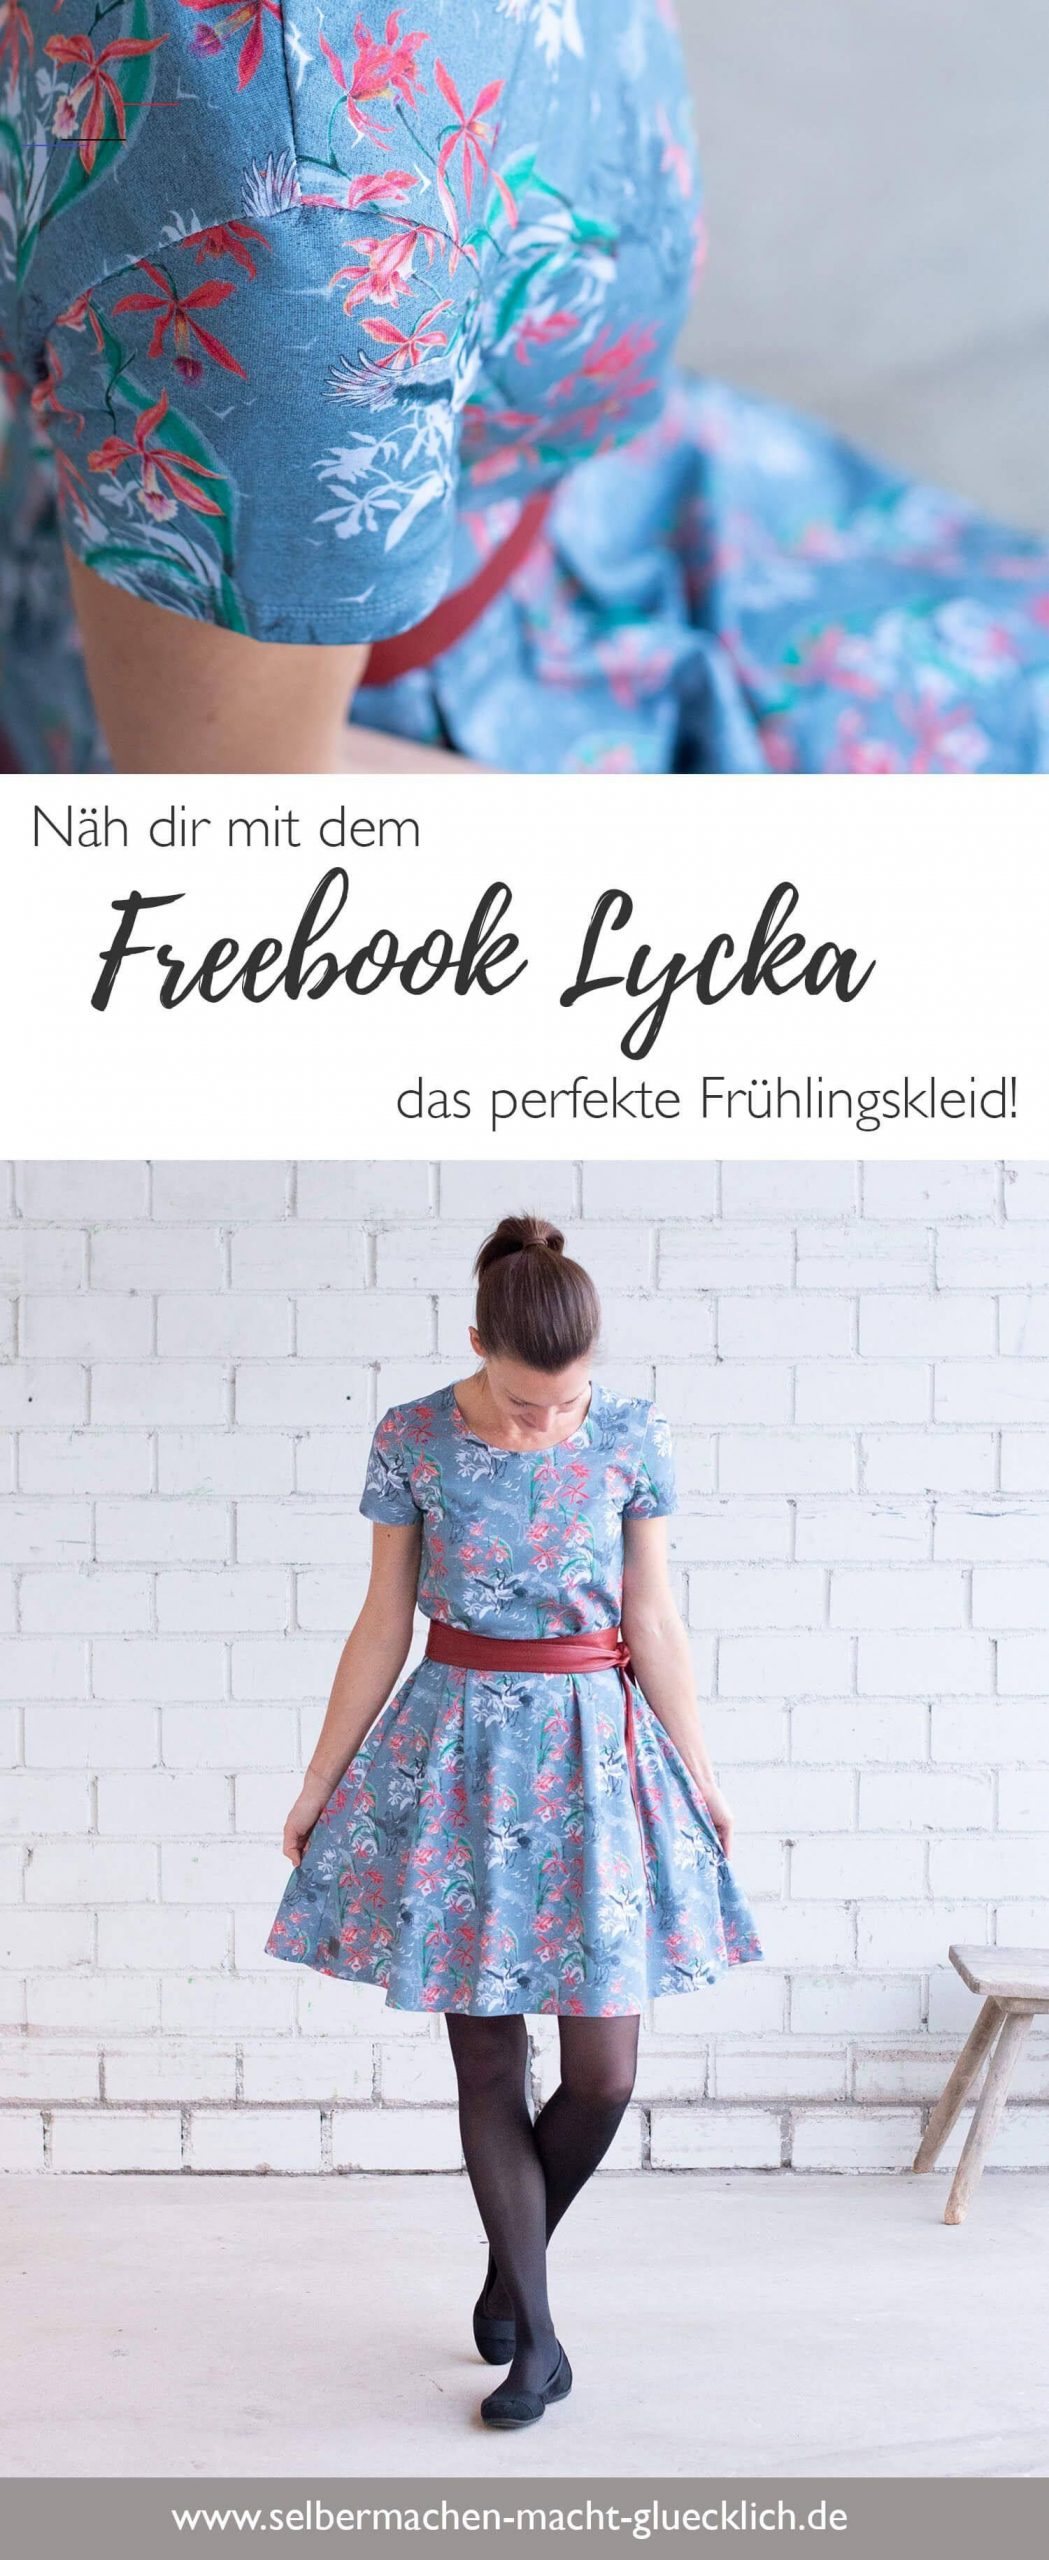 Freebook Lycka Für Das Perfekte Frühlingskleid